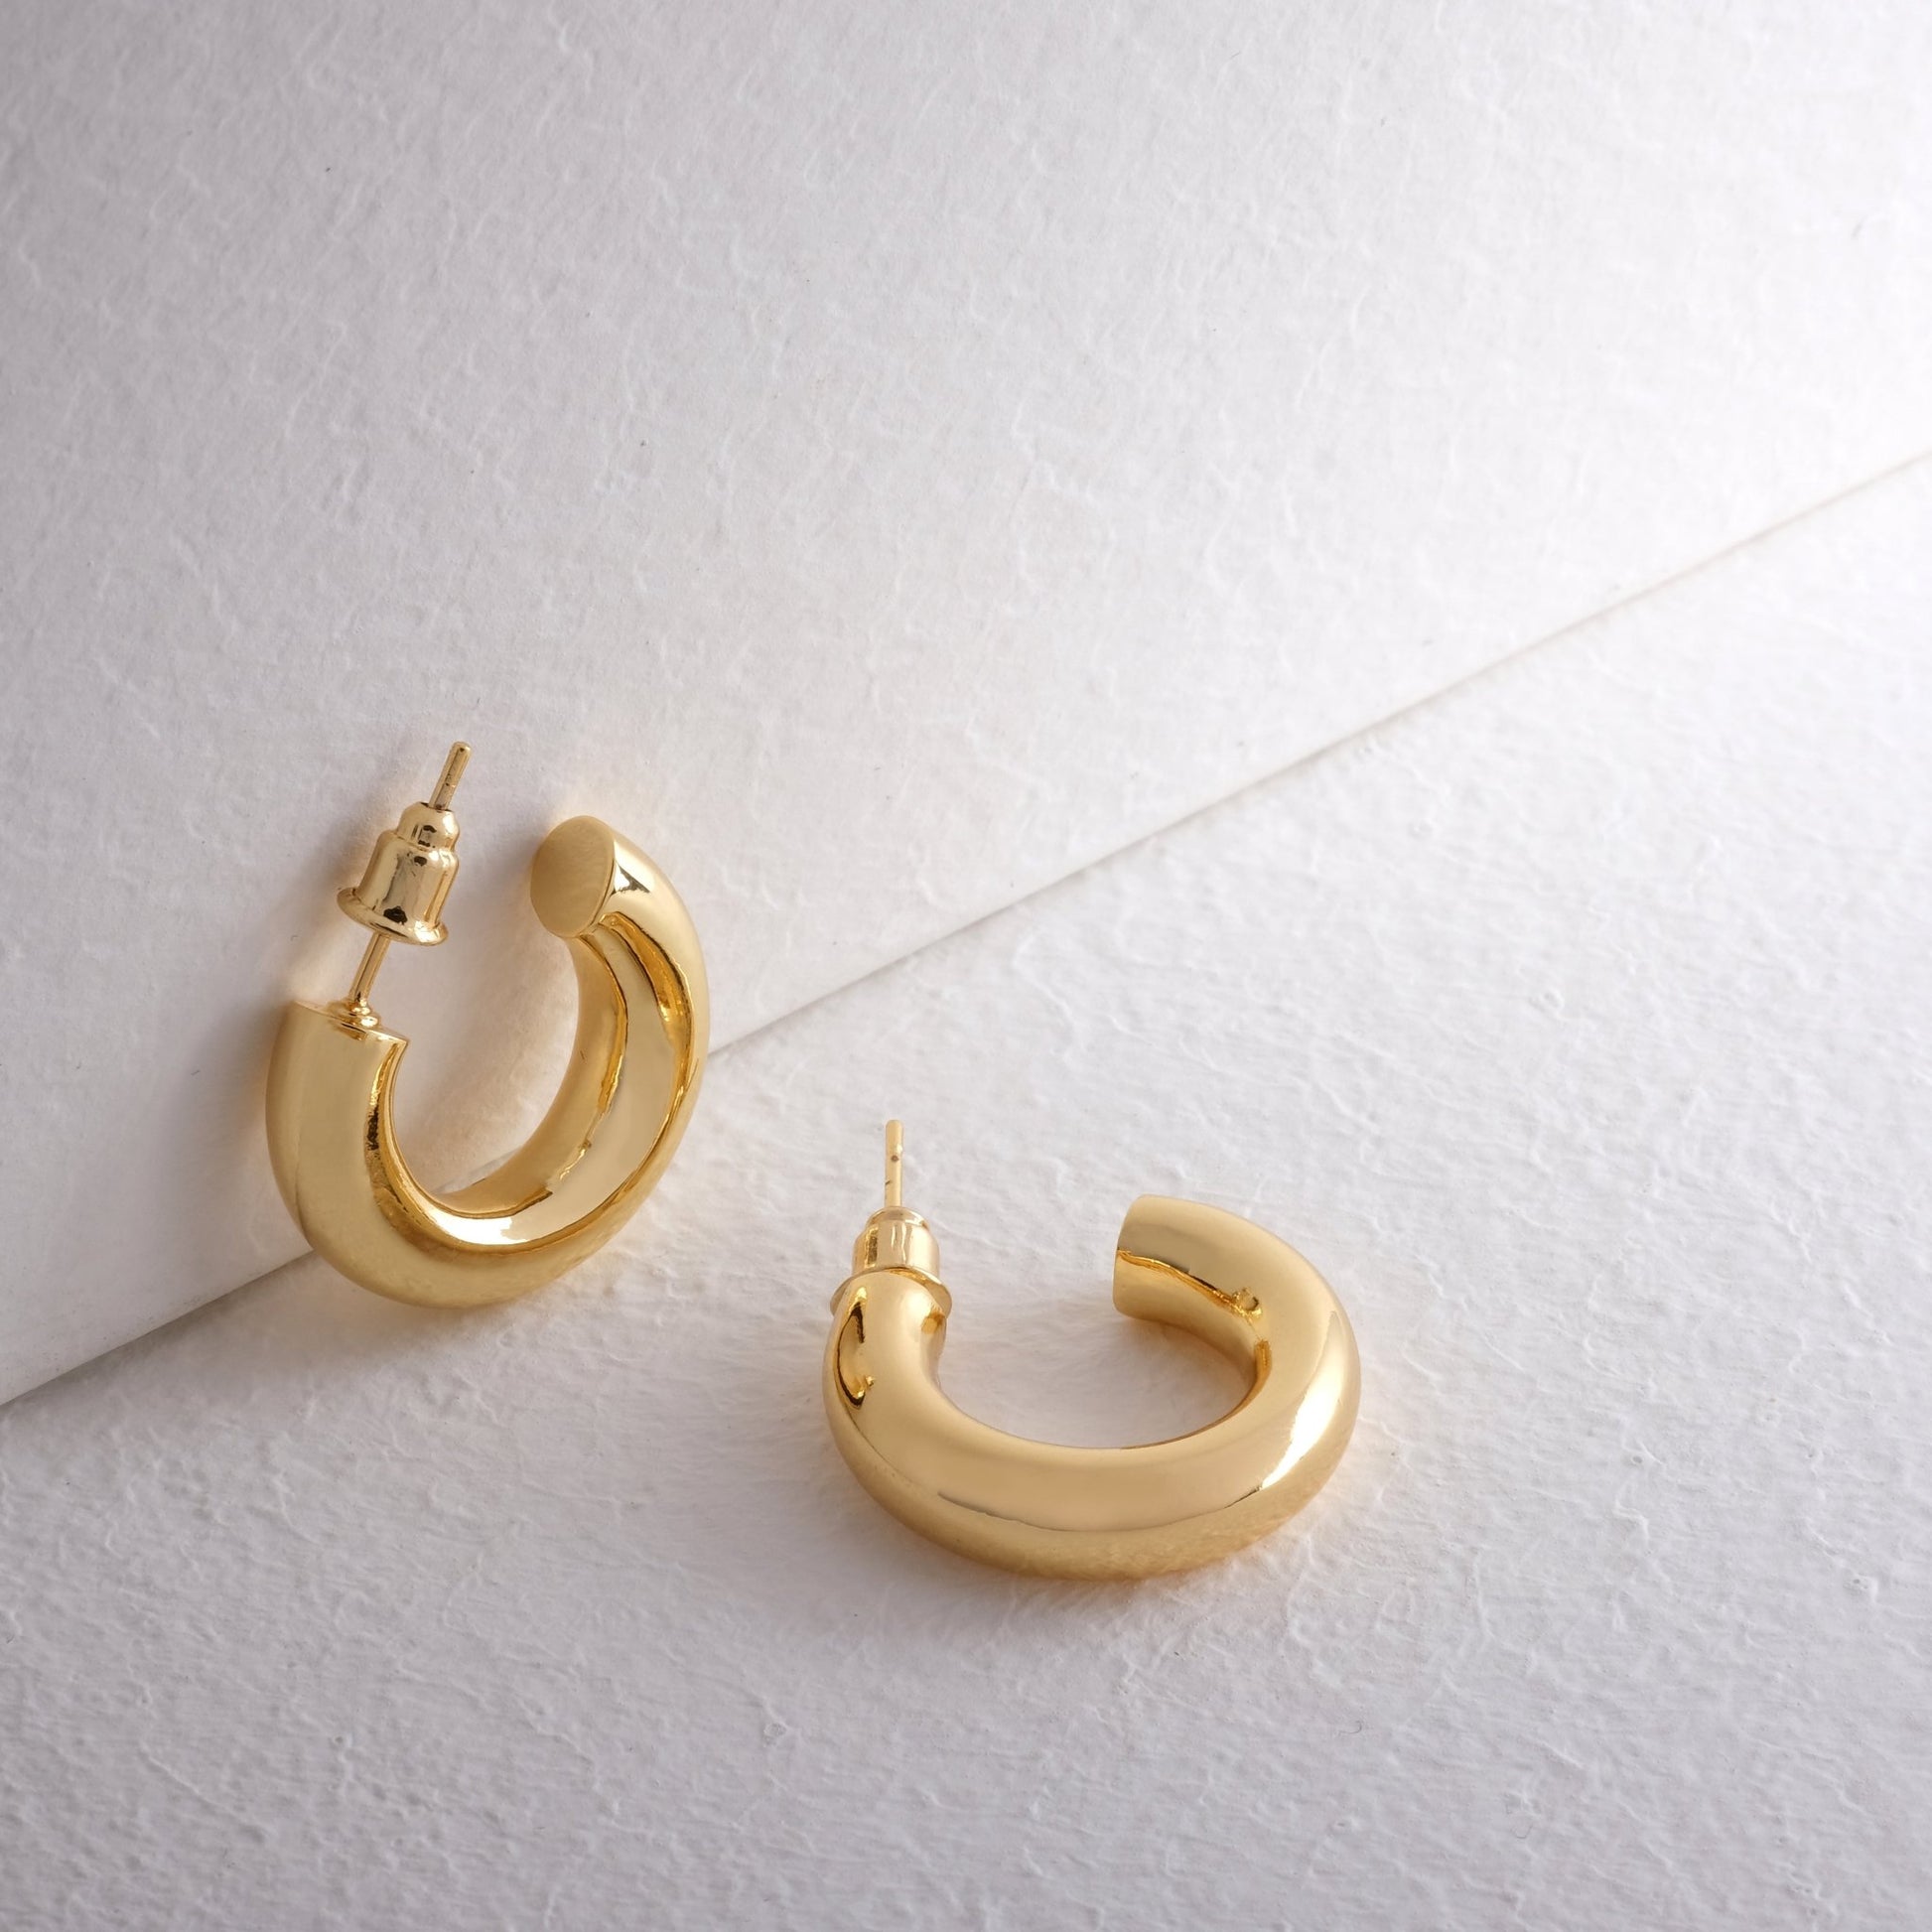 Huggie Hoop Earrings - 14k Gold Plated Open Hoop Earrings Chunky 20mm 30mm Small Earrings Open Hoops Tube Jewelry Gift